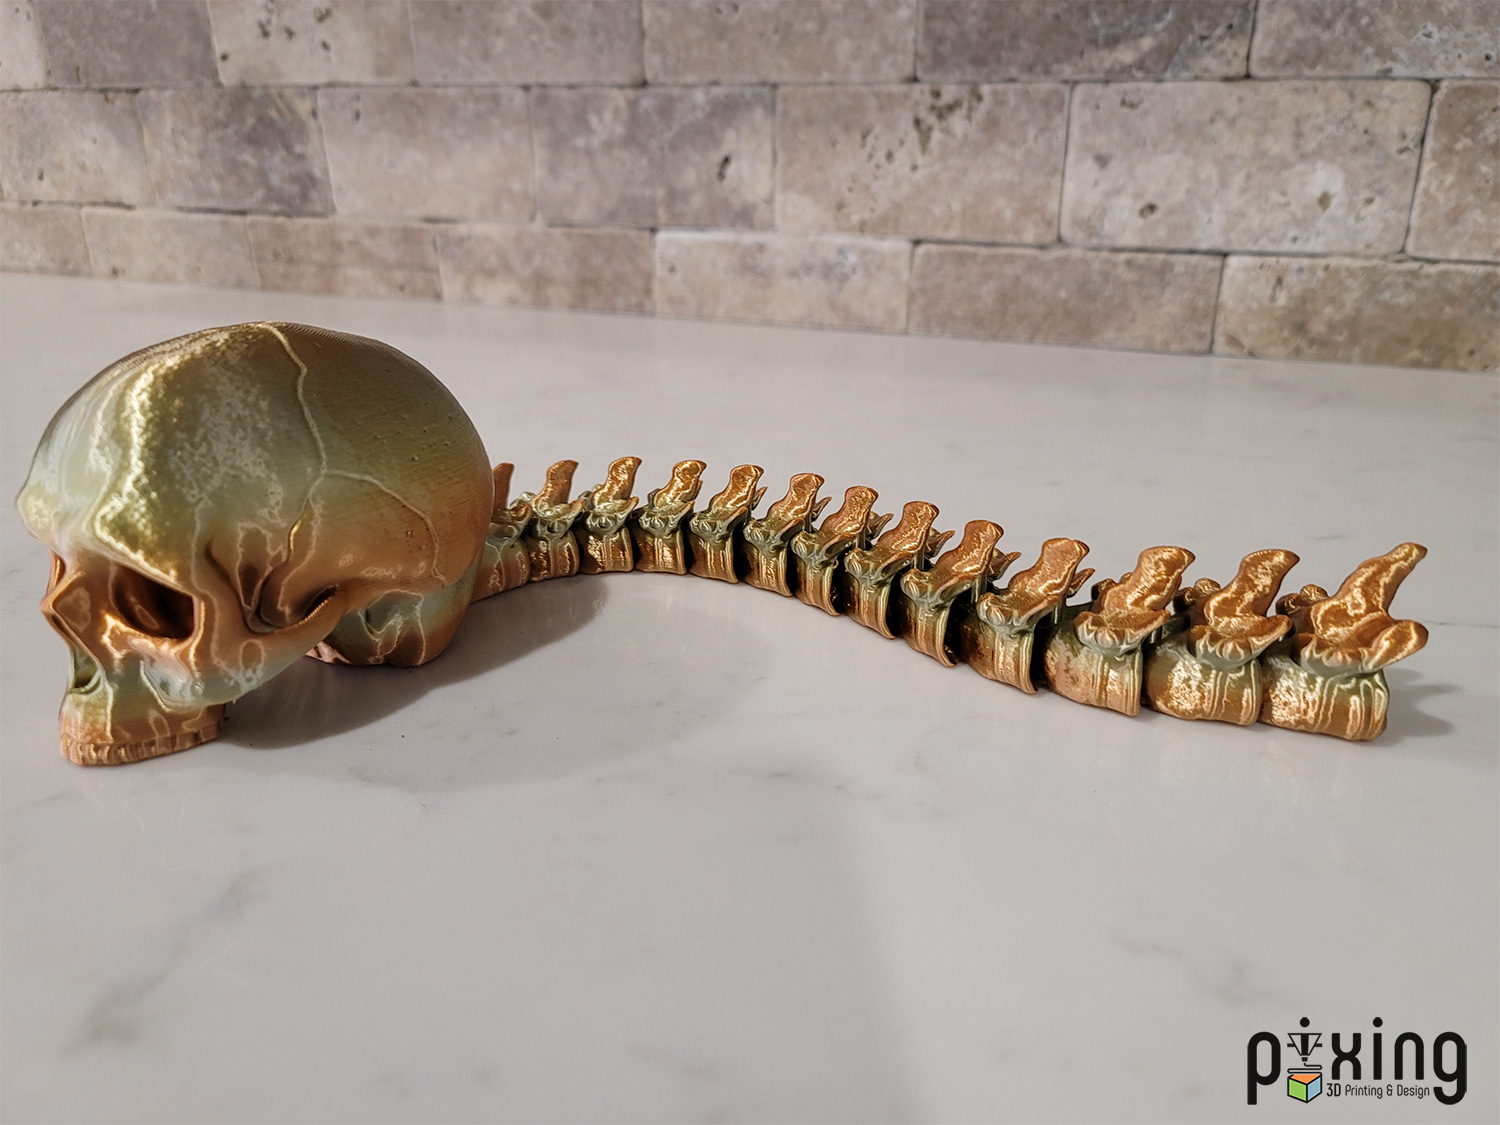 Predator Hunting Skull Trophy 3D Printed Movie Prop Side View